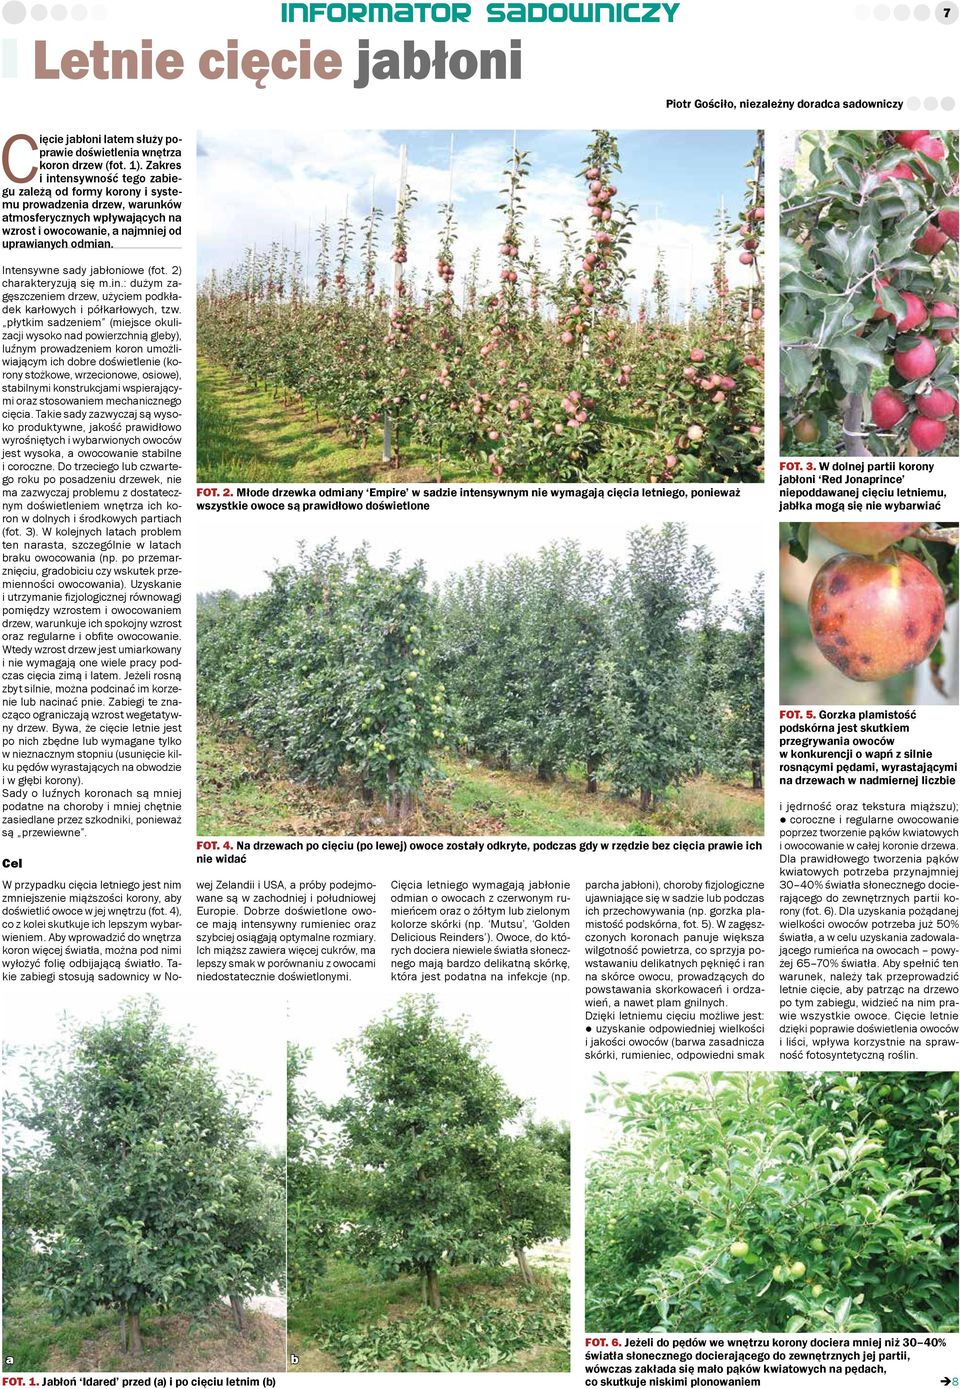 Intensywne sady jabłoniowe (fot. 2) charakteryzują się m.in.: dużym zagęszczeniem drzew, użyciem podkładek karłowych i półkarłowych, tzw.